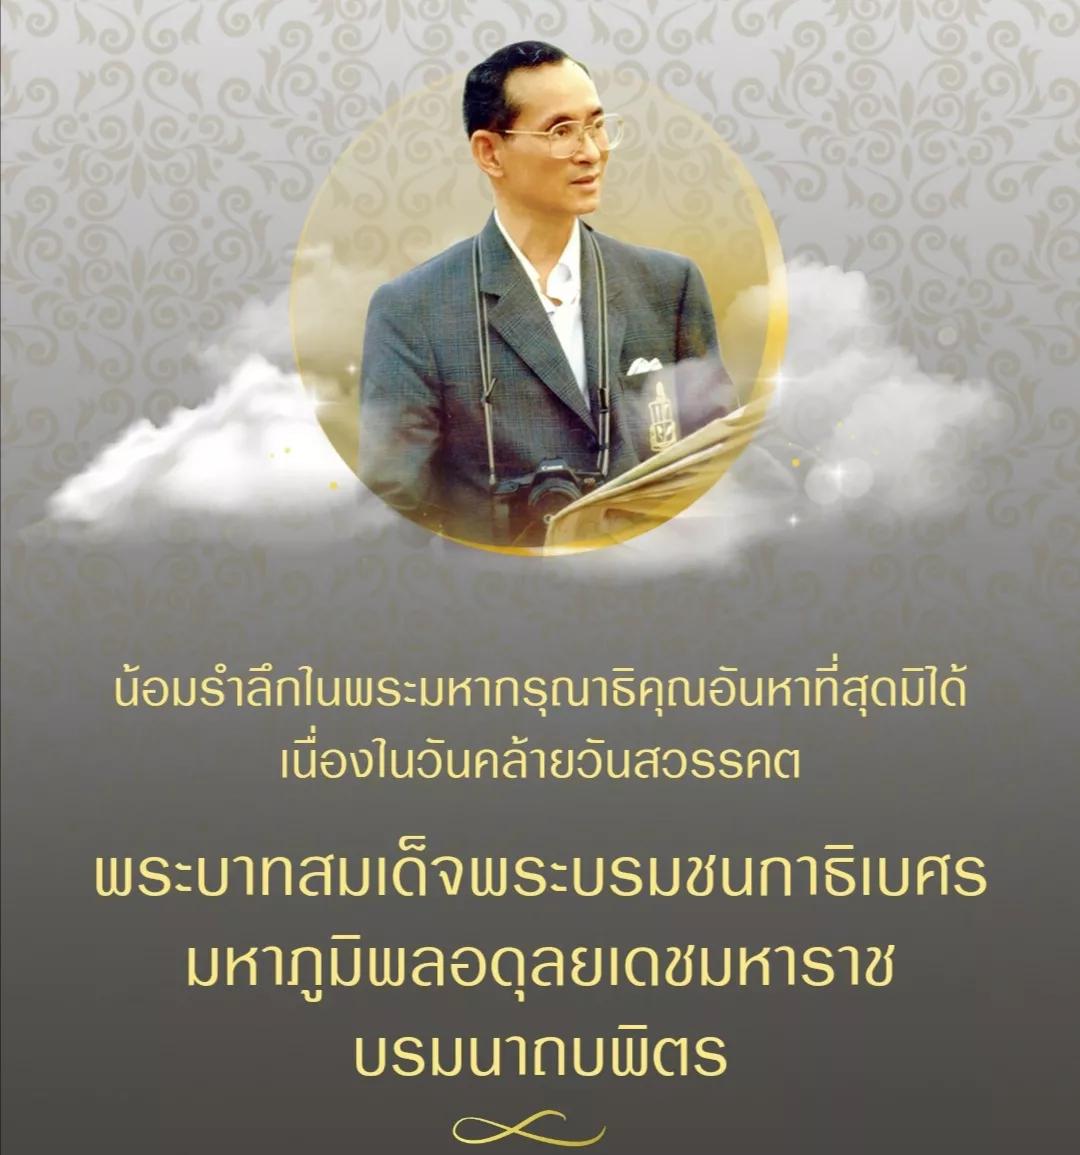 泰国拉玛九世王仙逝三周年,全泰民众深切缅怀!